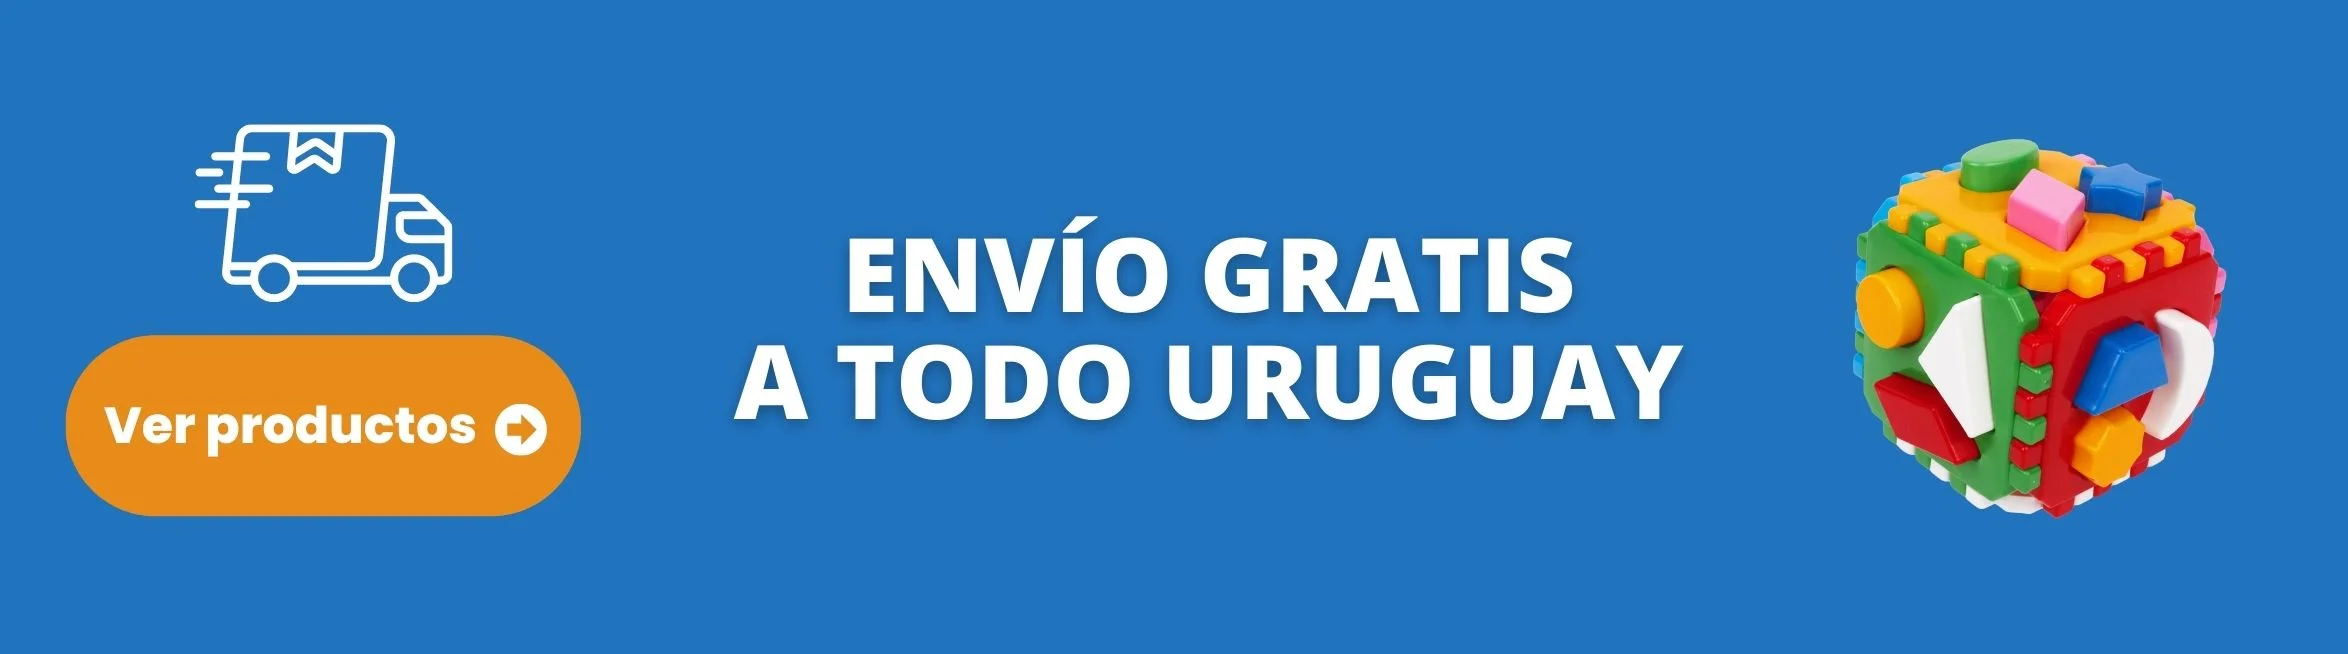 Imagen decorativa que indica llamada a la acción para ver los productos de Multijuegos, materiales didácticos y educativos en Uruguay.